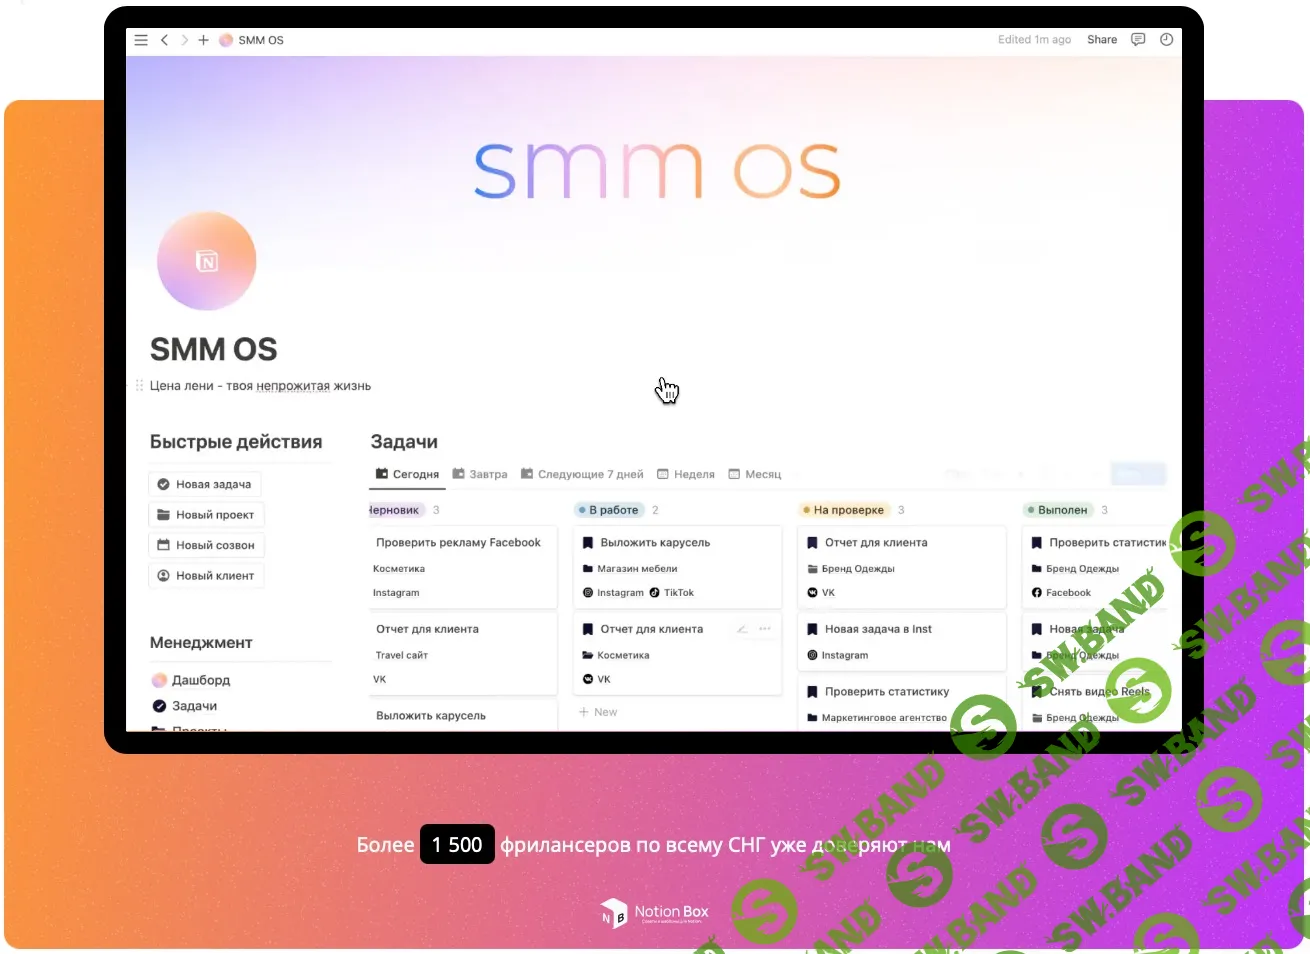 [Notion] SMM OS Premium - пространство для SMM-специалистов в Notion [NotionBox]